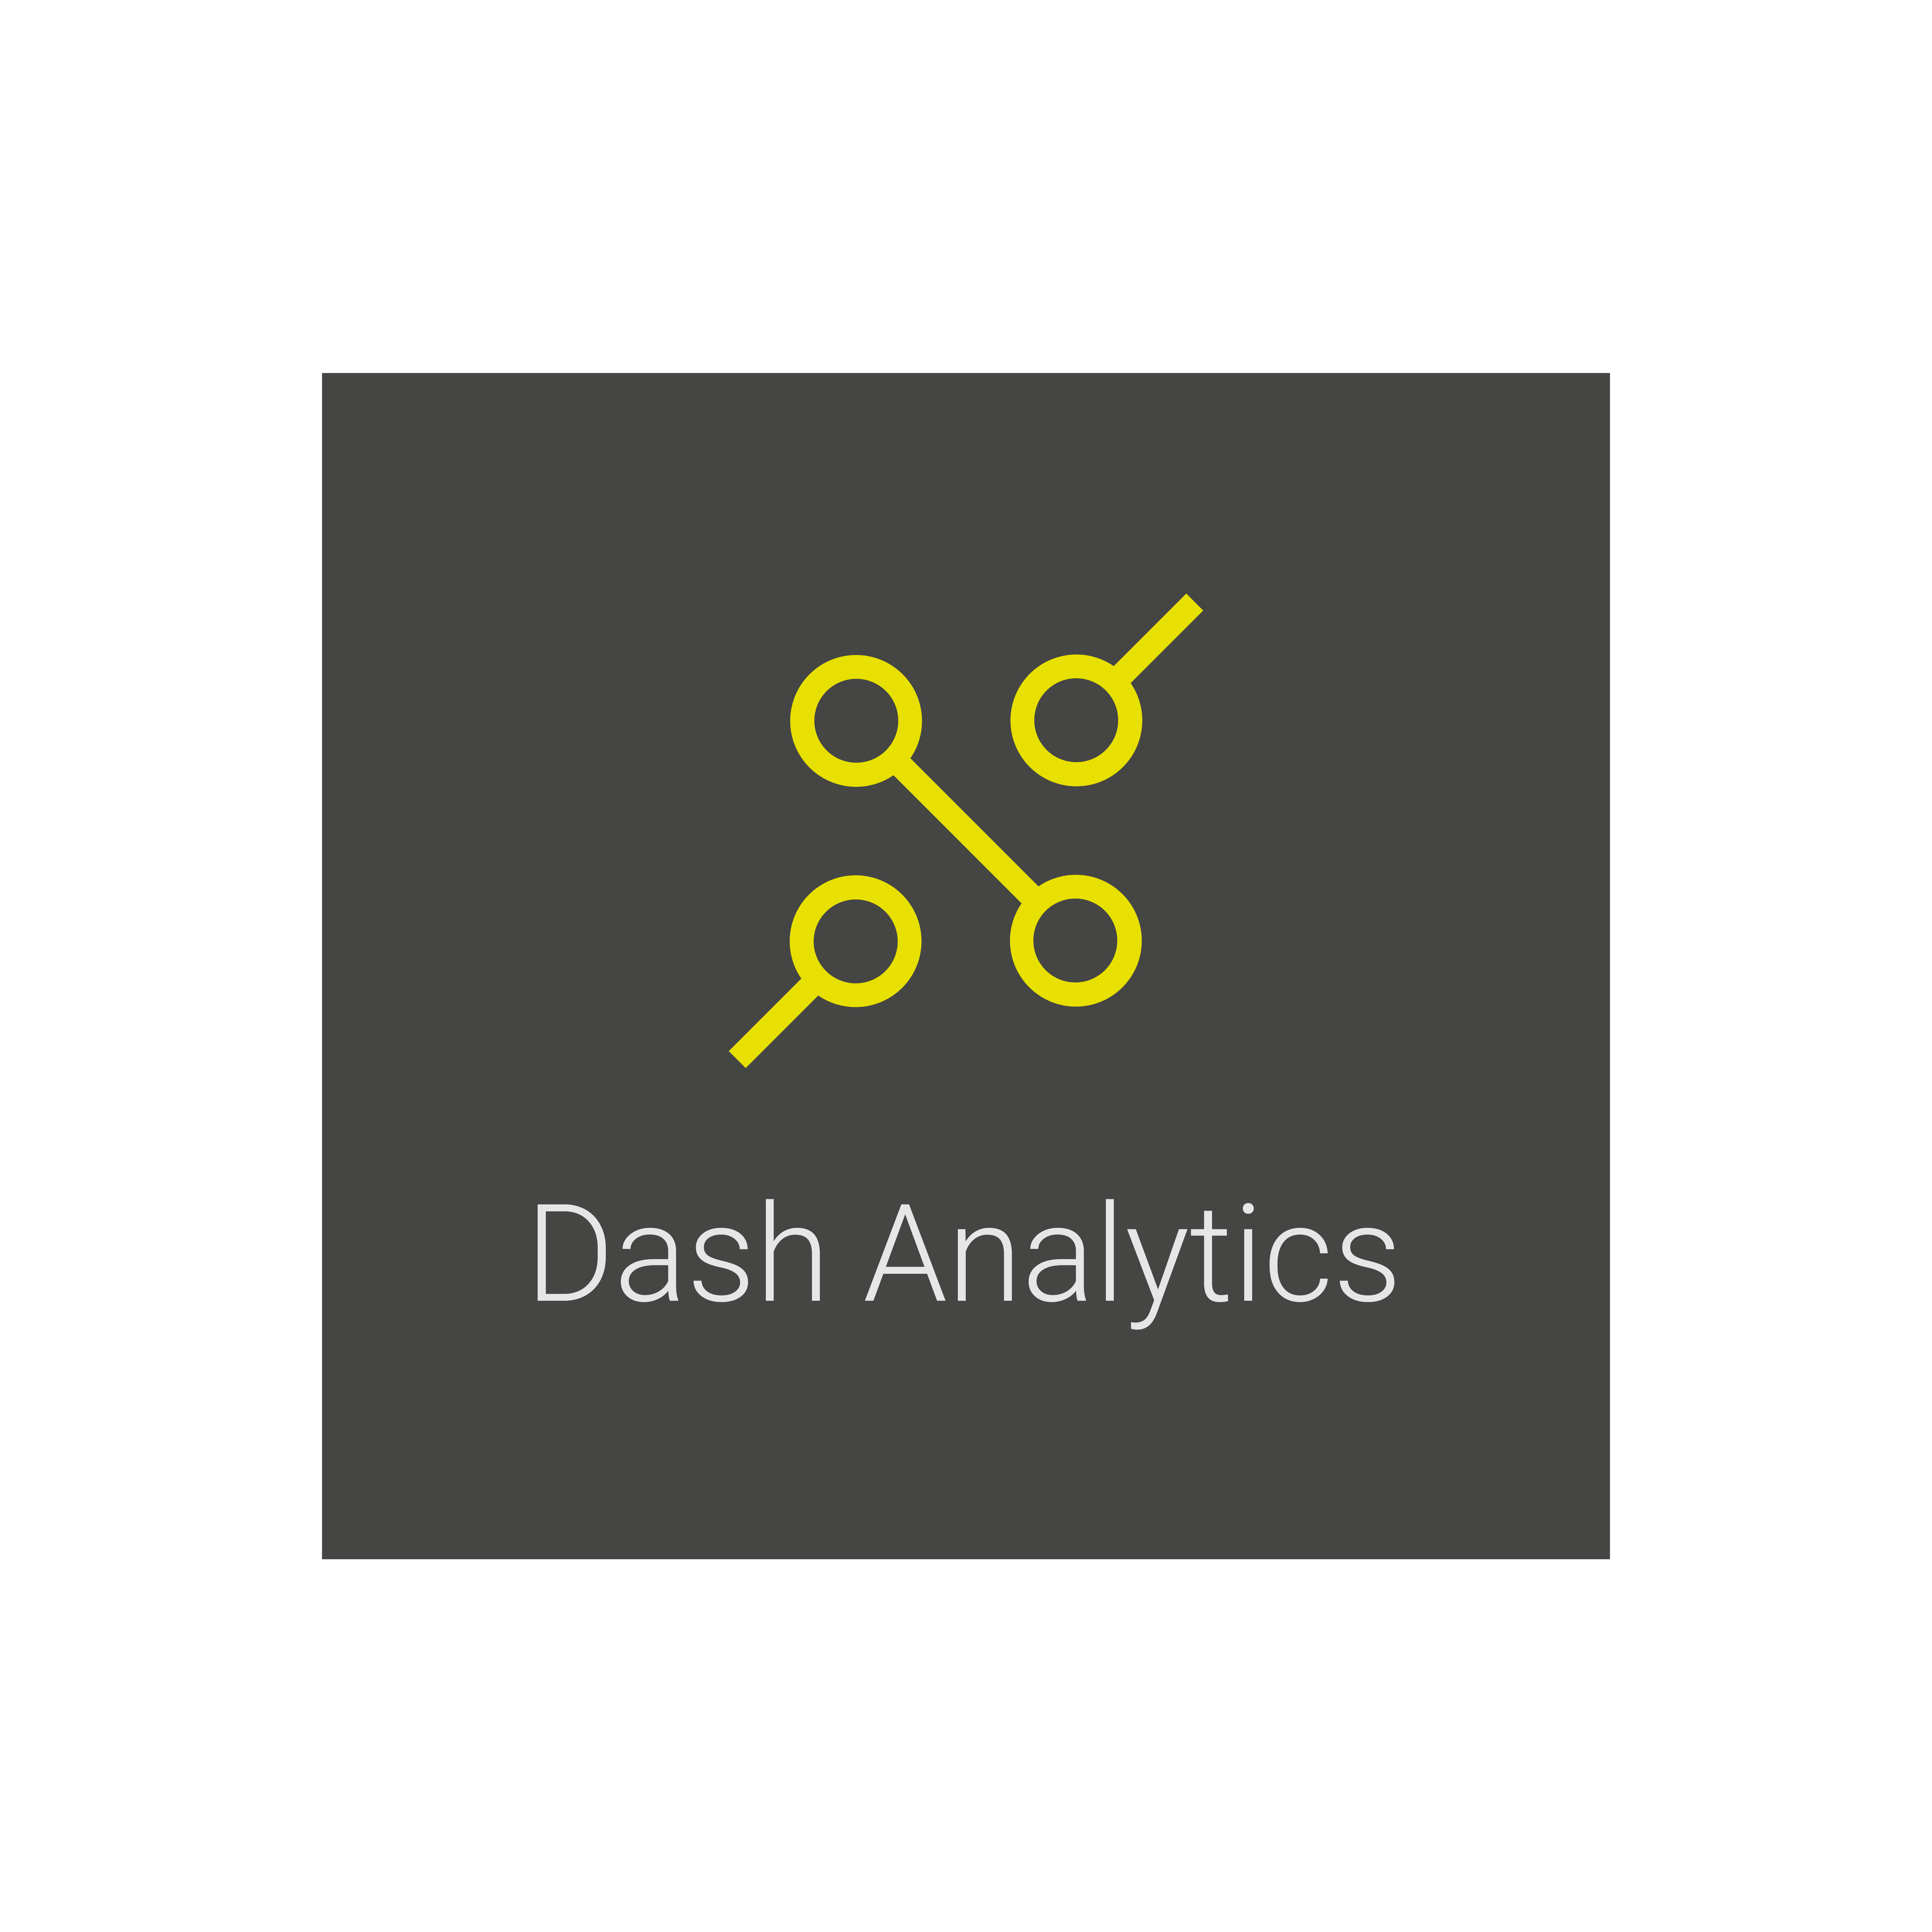 Dash Analytics